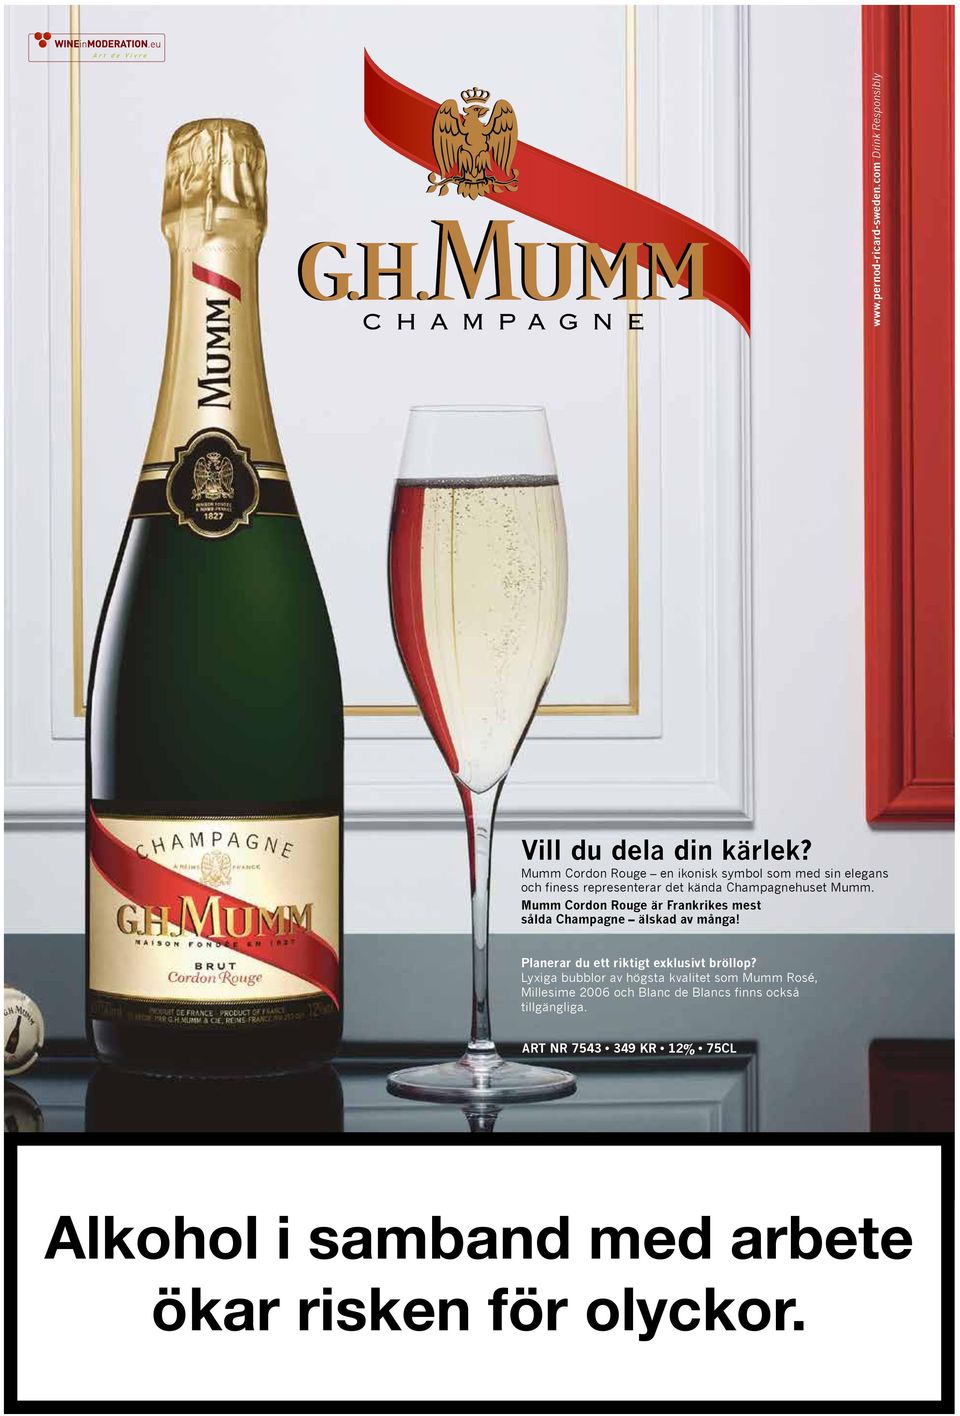 N100 M30 J70 N25 Vill du dela din kärlek? Mumm Cordon Rouge en ikonisk symbol som med sin elegans finess representerar det kända Champagnehuset Mumm.